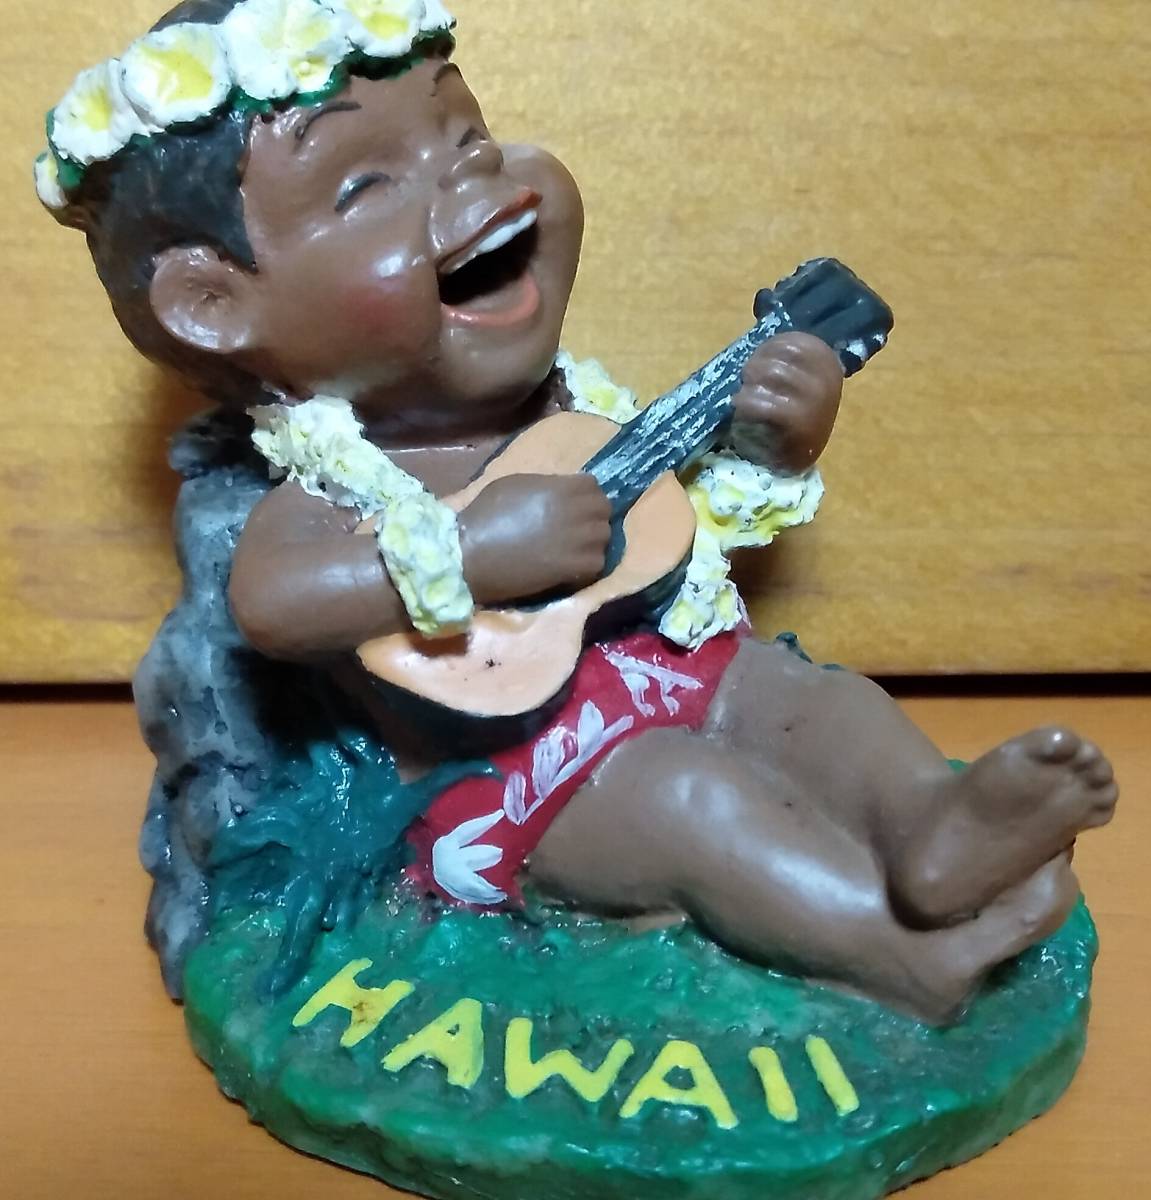 「ハワイ(ポリネシアン) 子供 ウクレレ フィギュア」　polynesian kids collection figure/人形